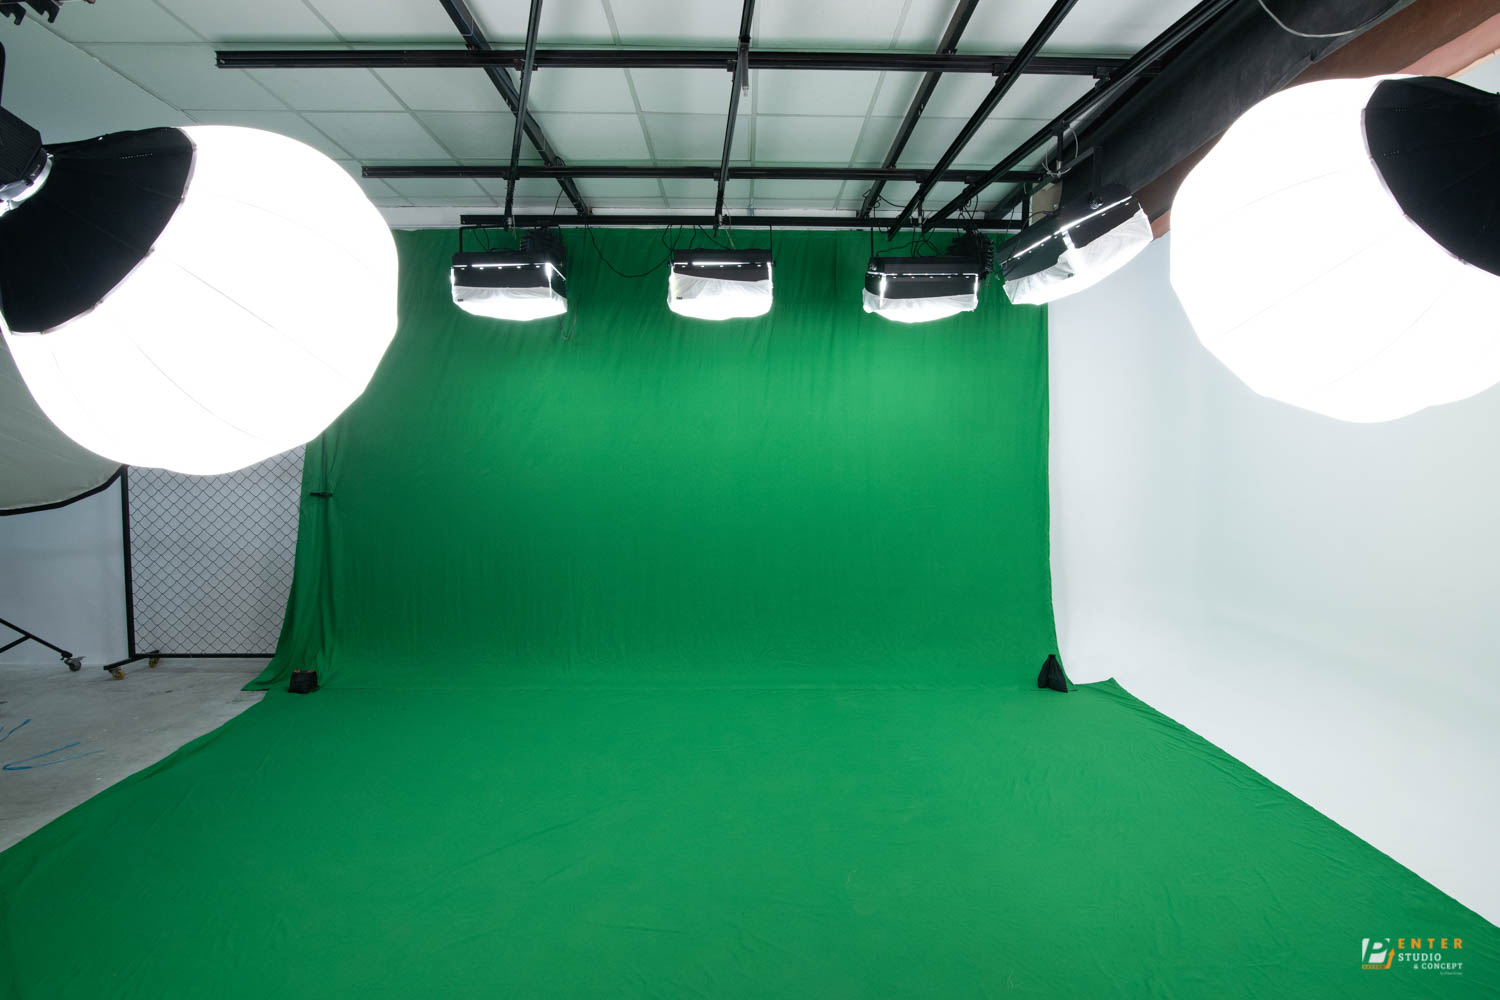 Phim trường phông xanh là nơi không thể thiếu đối với các nhà sản xuất phim. Với không gian rộng lớn và trang thiết bị hiện đại, phim trường phông xanh sẽ giúp các ekip phim thực hiện các cảnh quay theo ý muốn của họ đồng thời tiết kiệm được thời gian và chi phí.